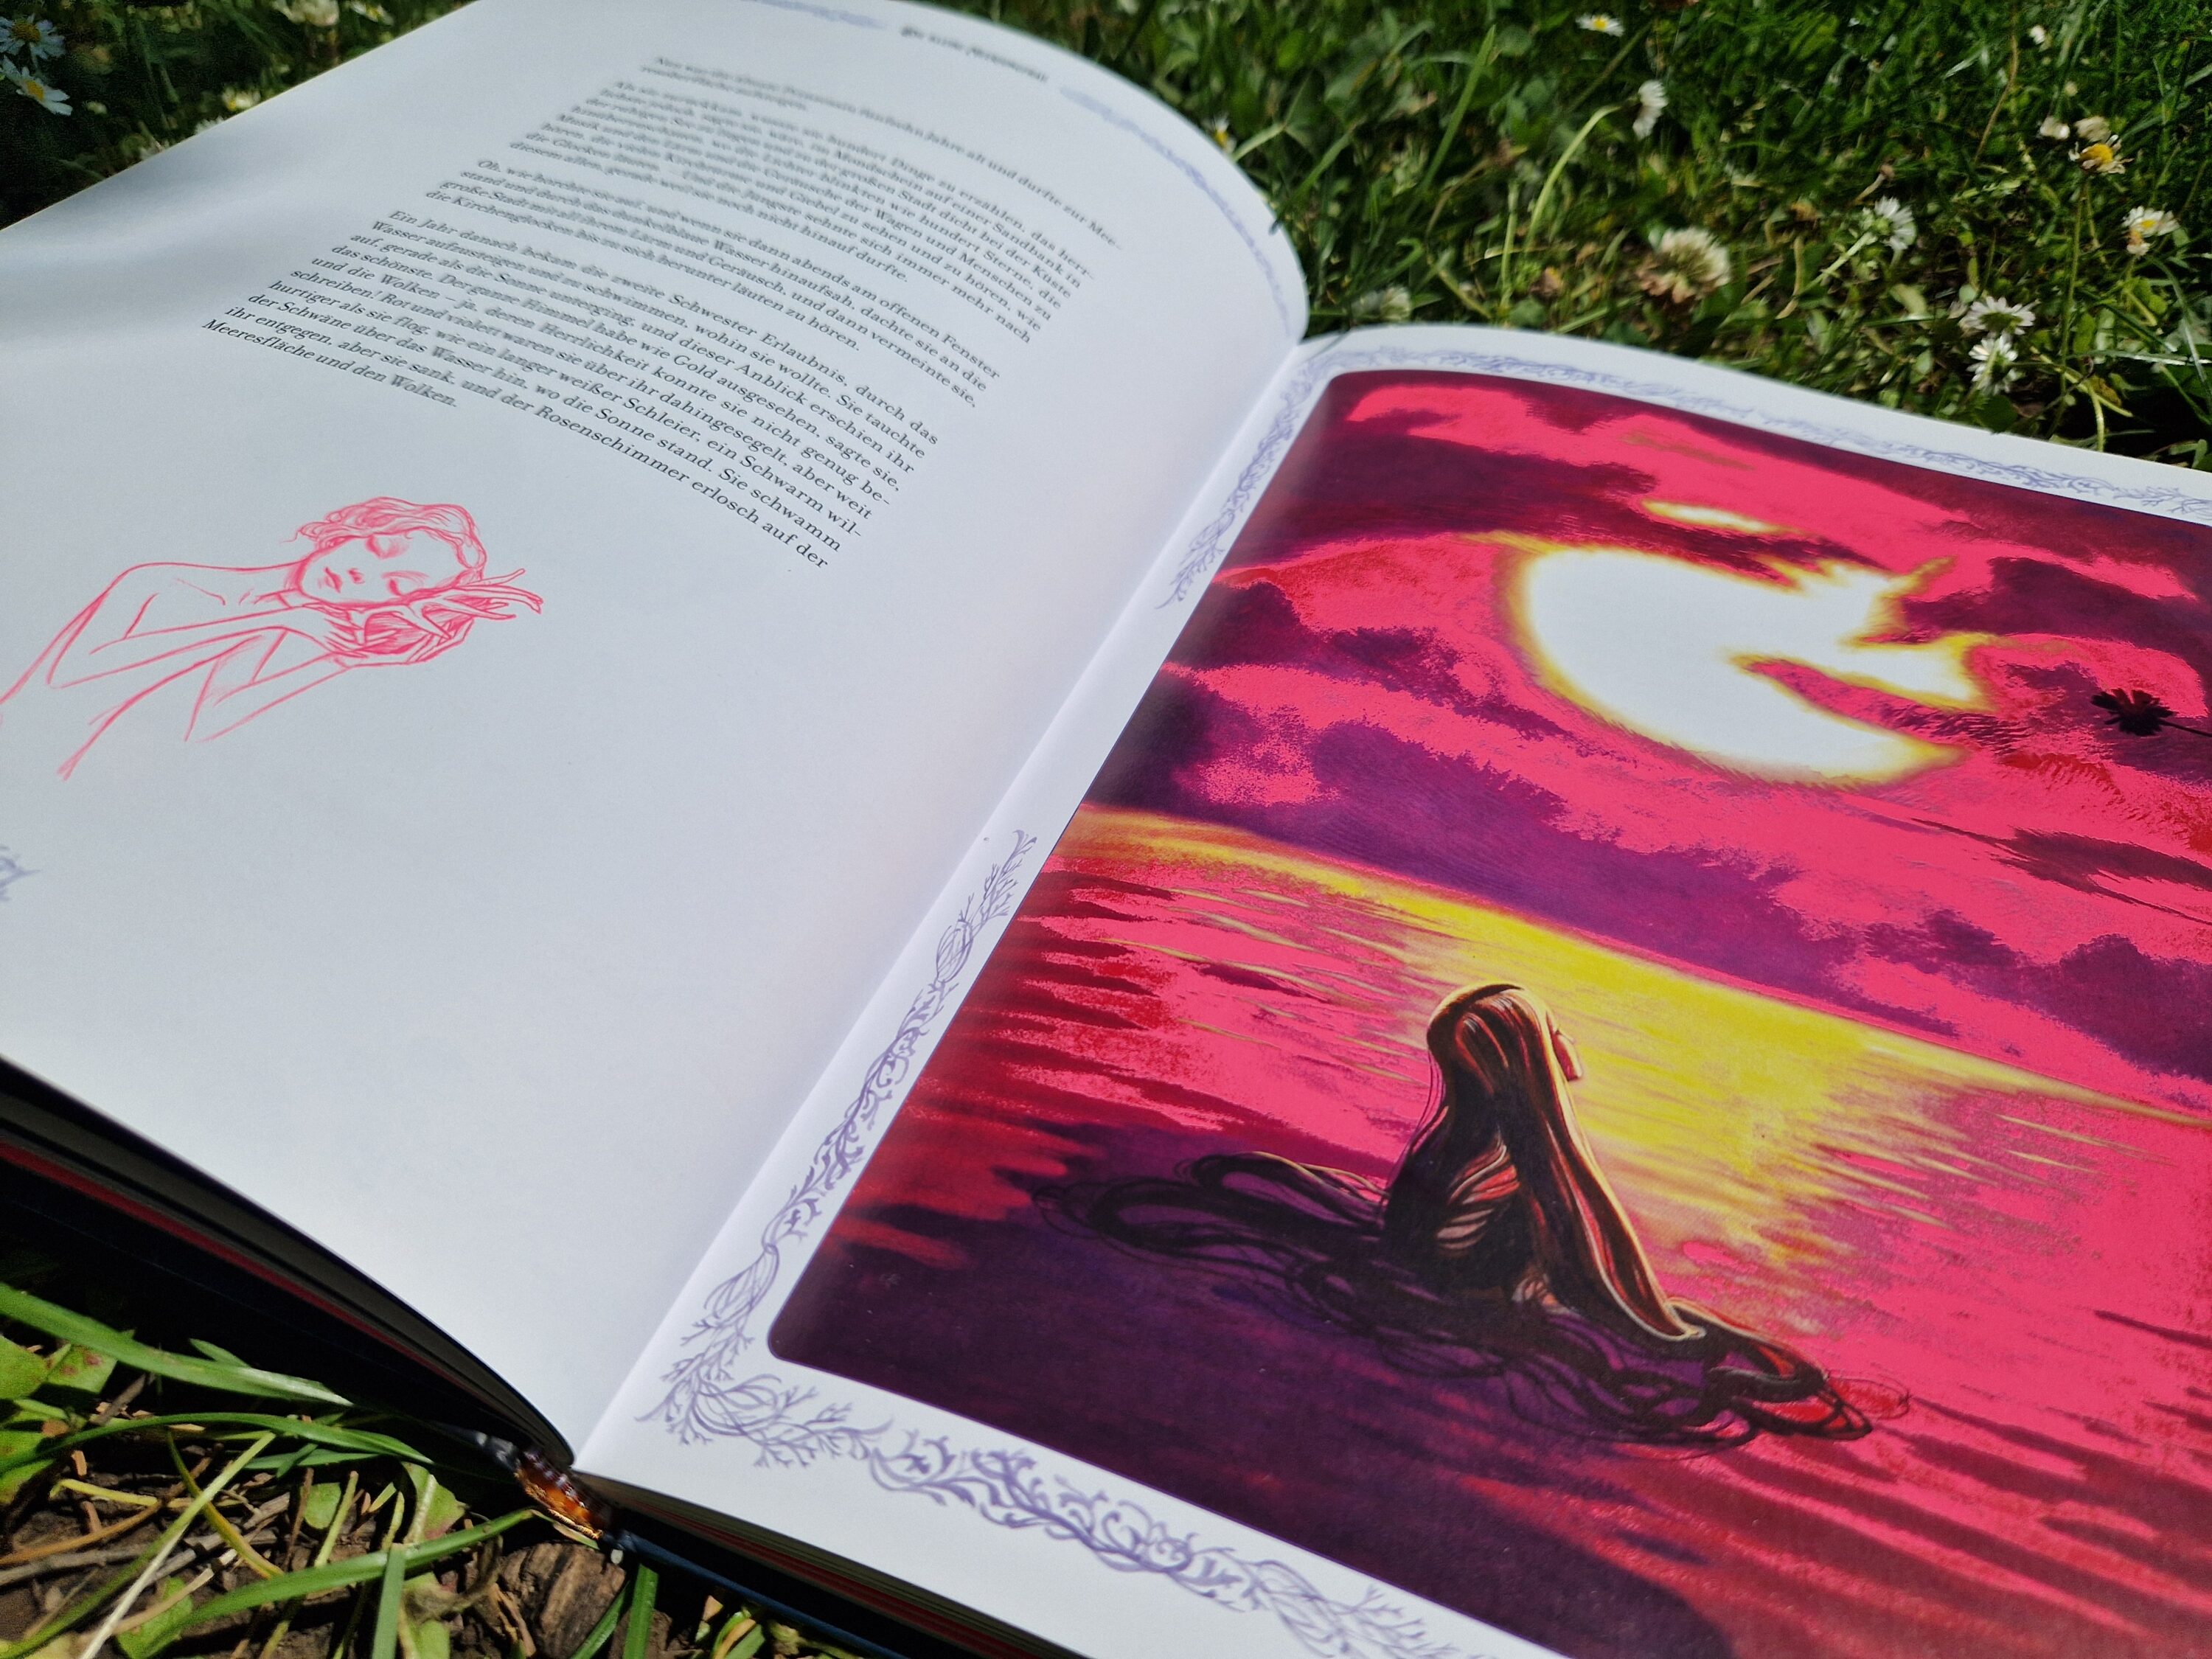 Blick ins Buch mit einer Textseite und einer ganzseitigen Illustrationen, die die Meerjungfrau im Sonnenuntergang zeigt